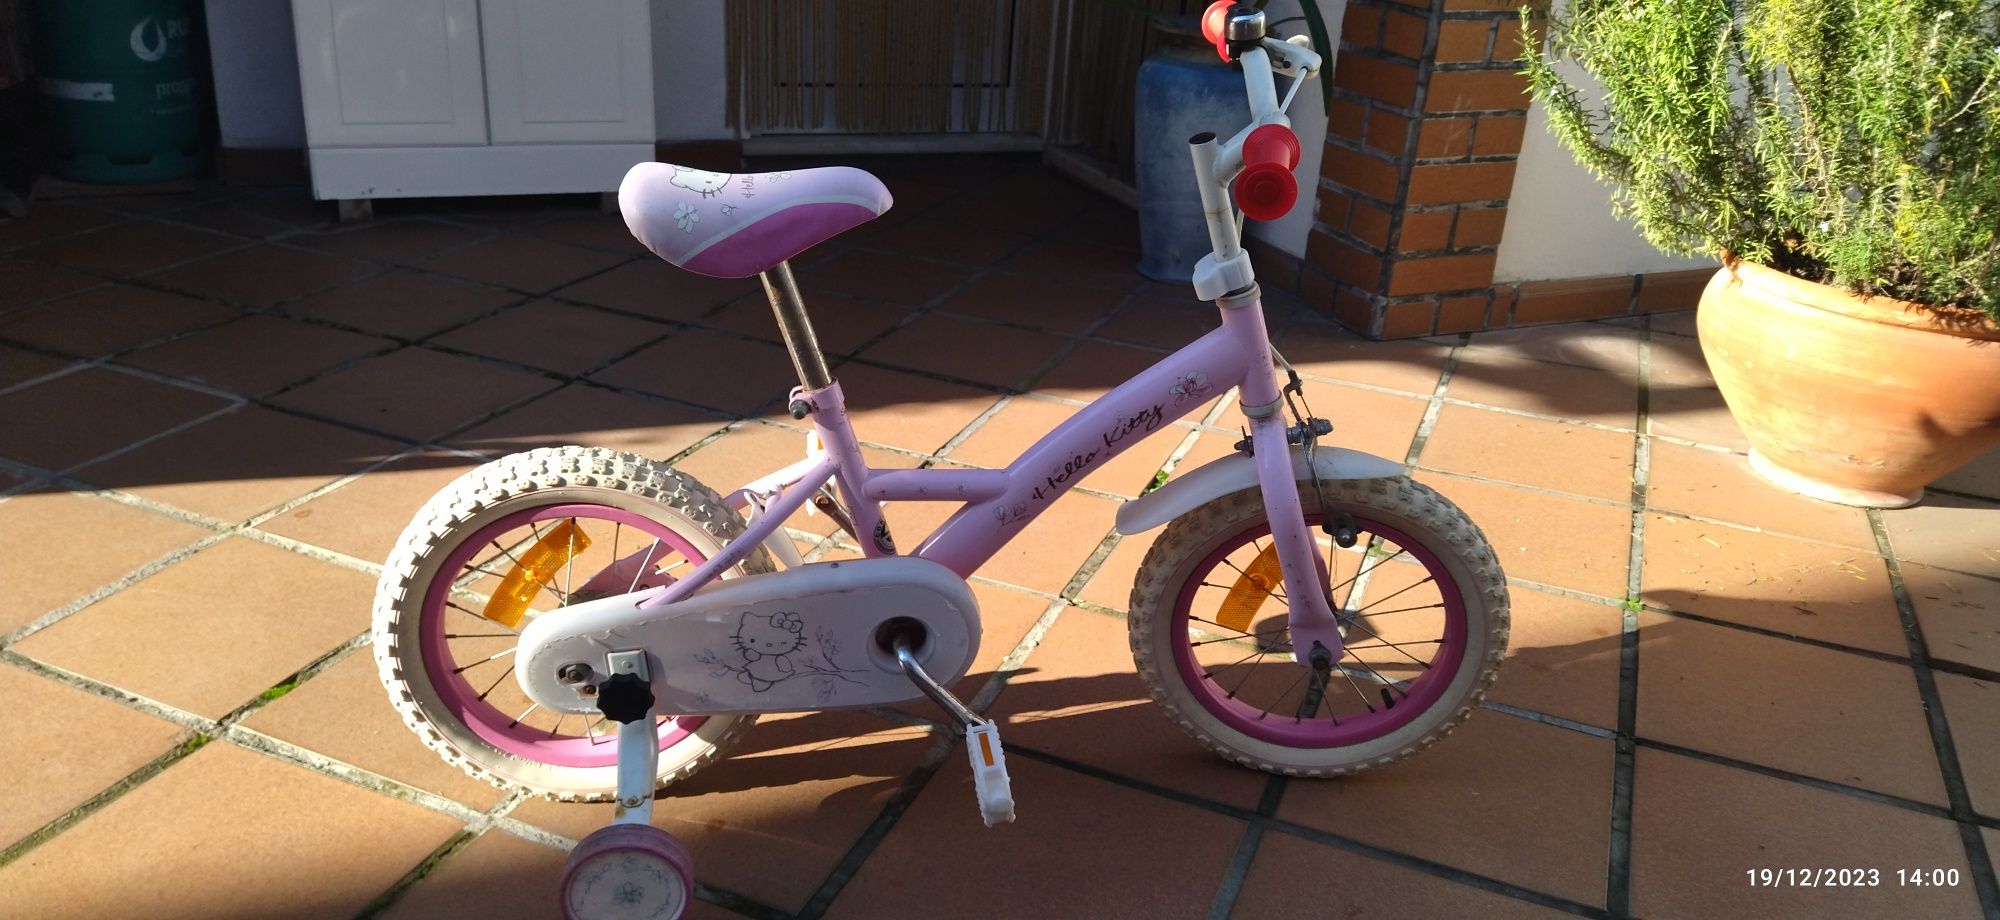 Bicicleta Hello Kitty